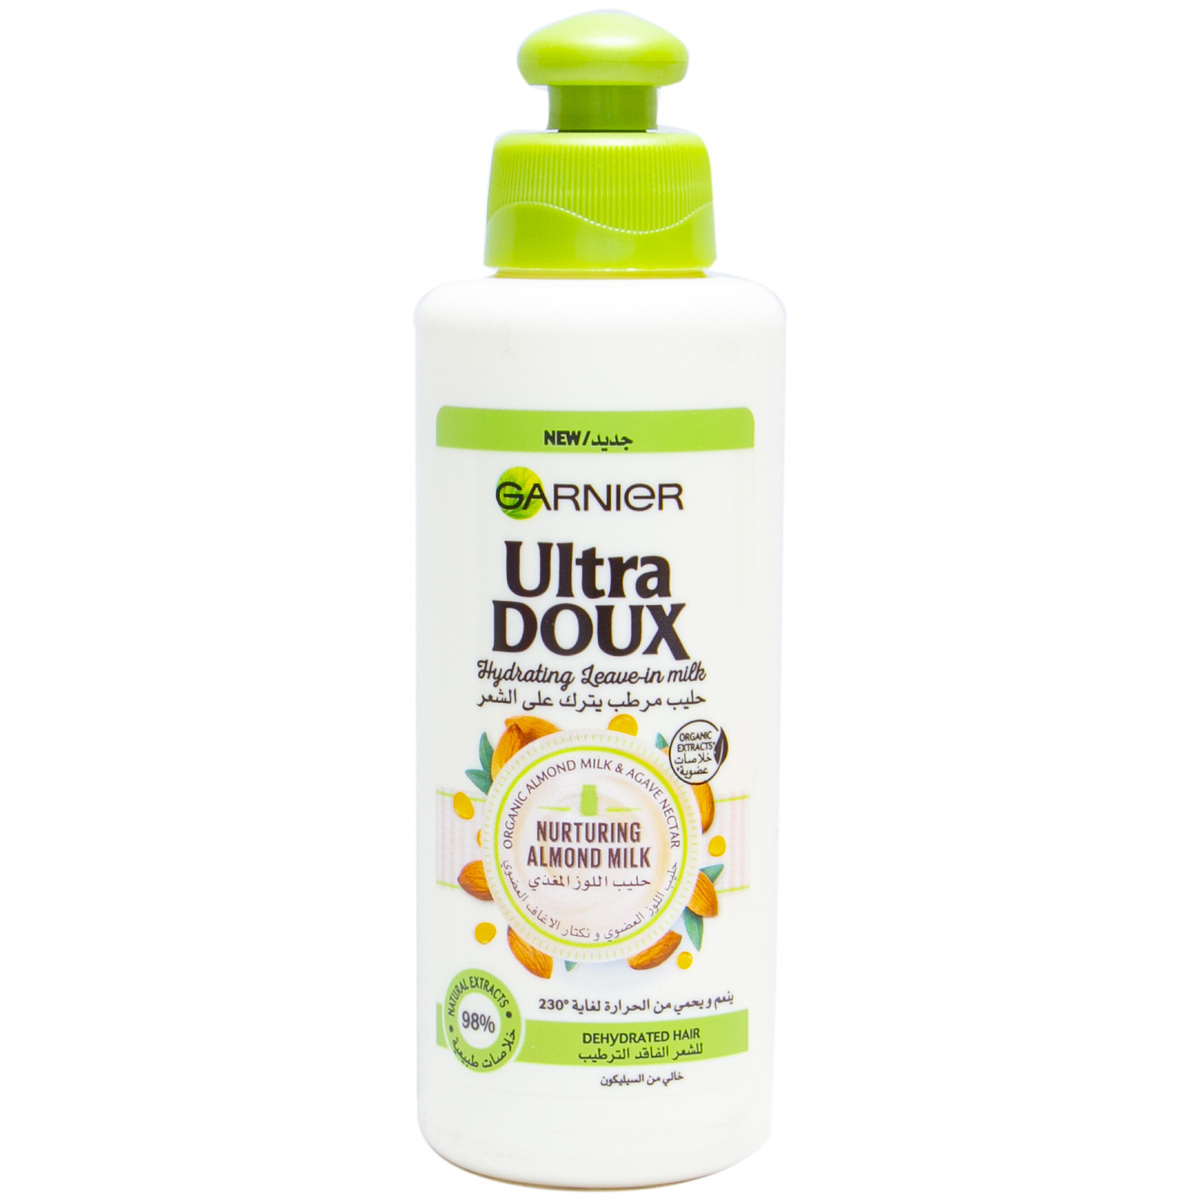 Garnier Ultra Doux Nurturing Almond Milk Hair Cream 200ml in UAE | LuLu UAE supermarket kanbkam